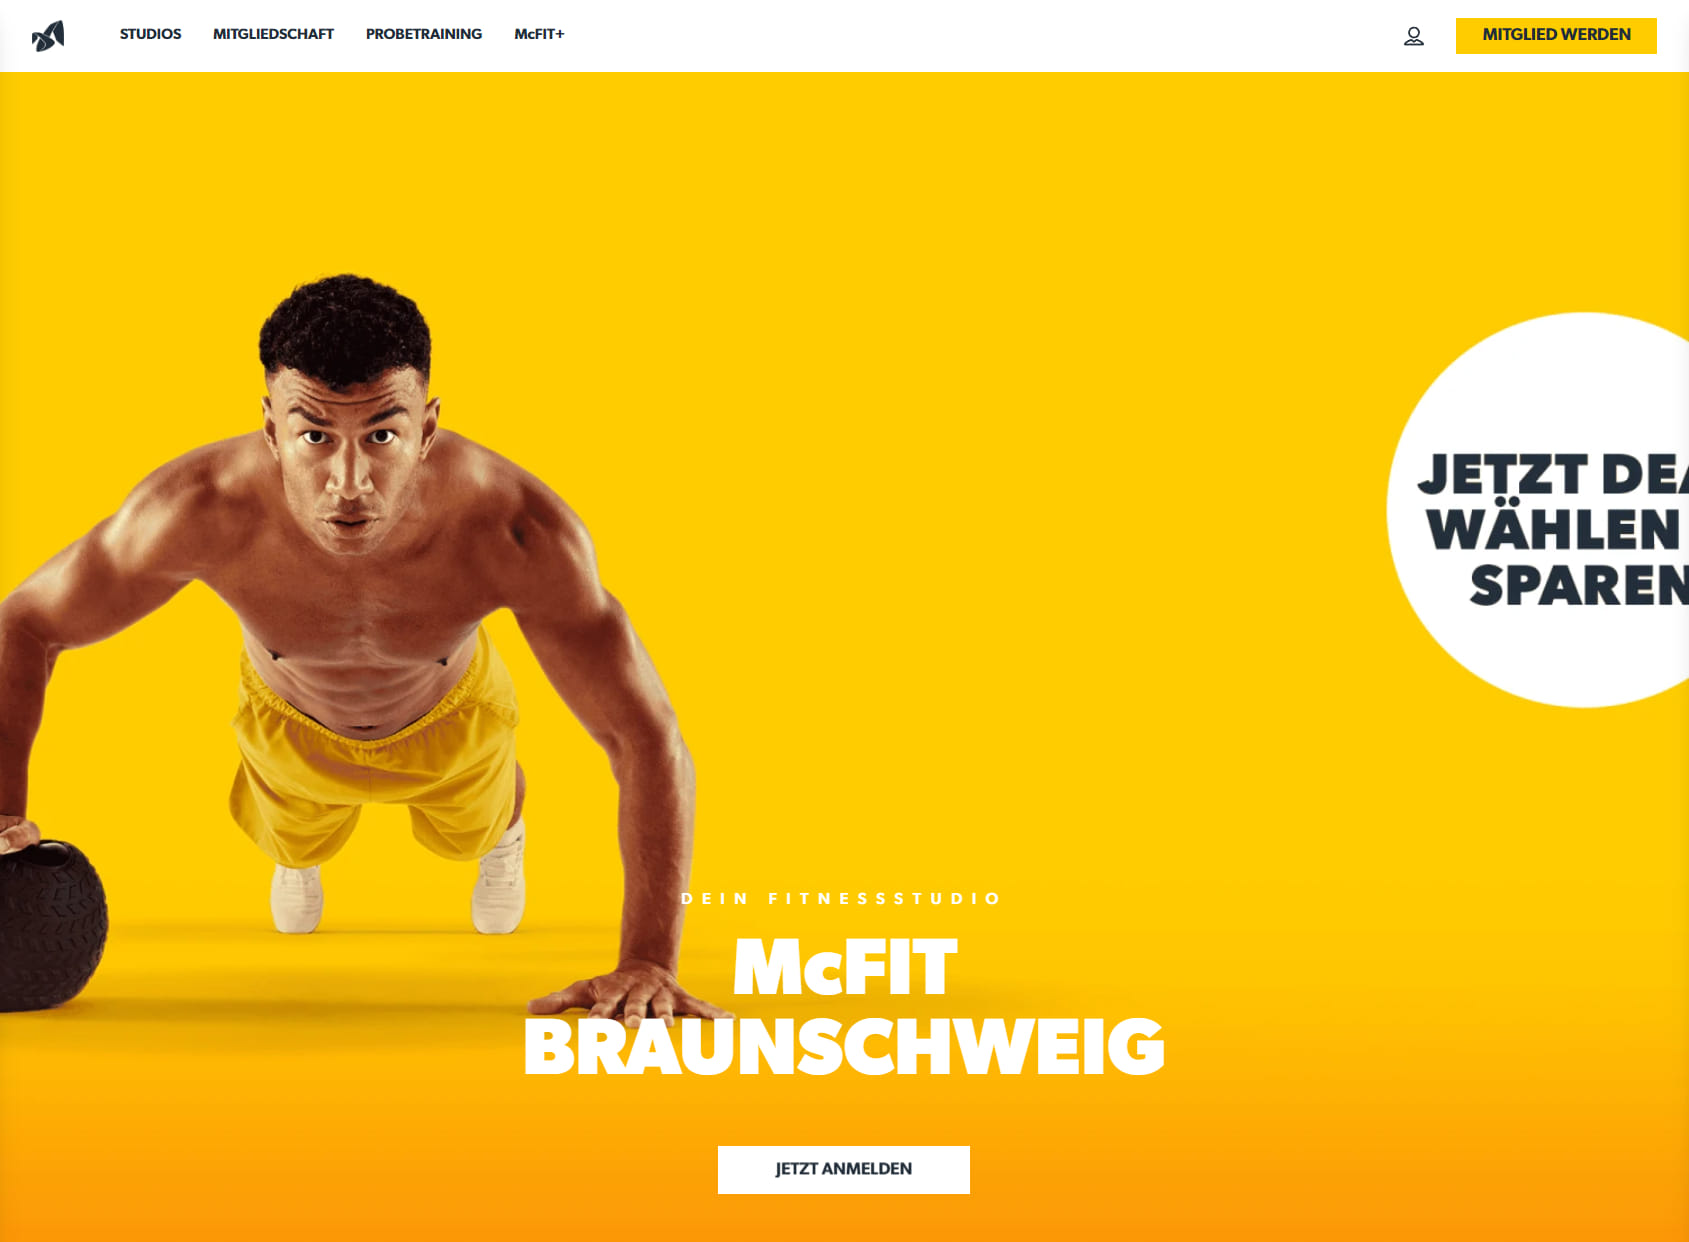 McFit gym Braunschweig